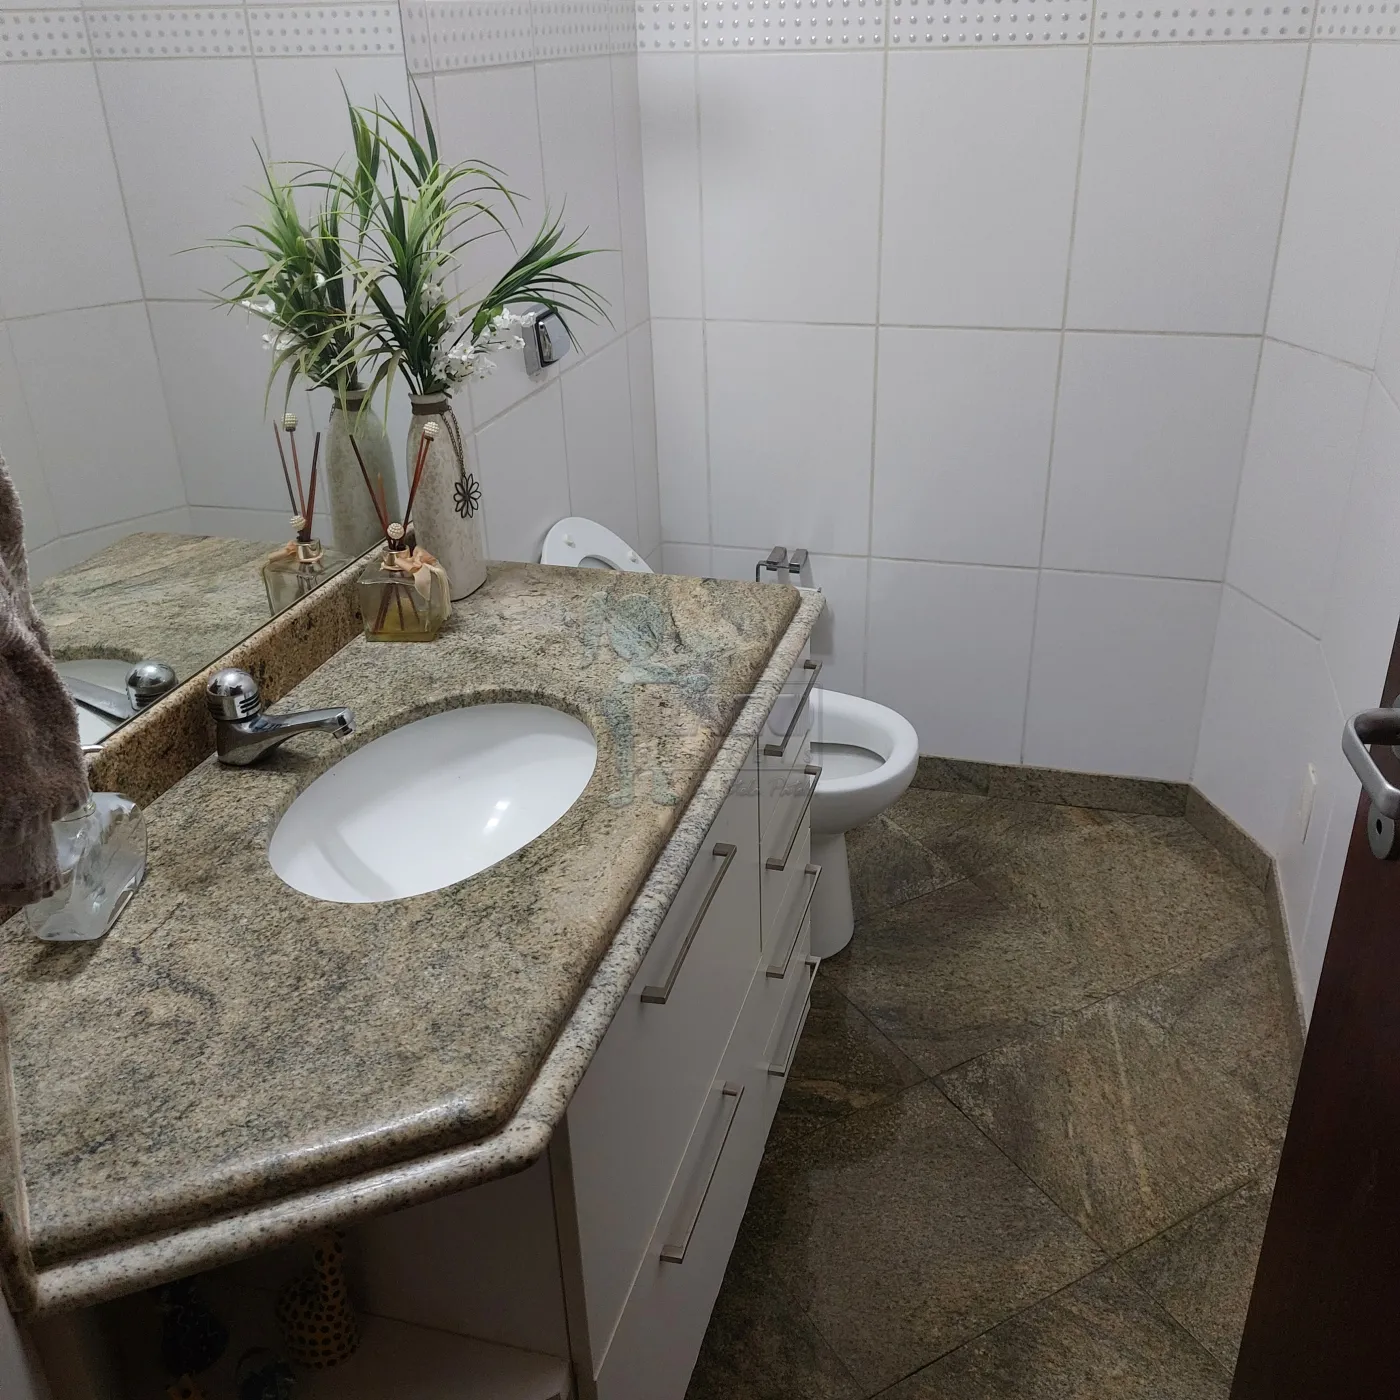 Comprar Apartamentos / Cobertura em Ribeirão Preto R$ 850.000,00 - Foto 5